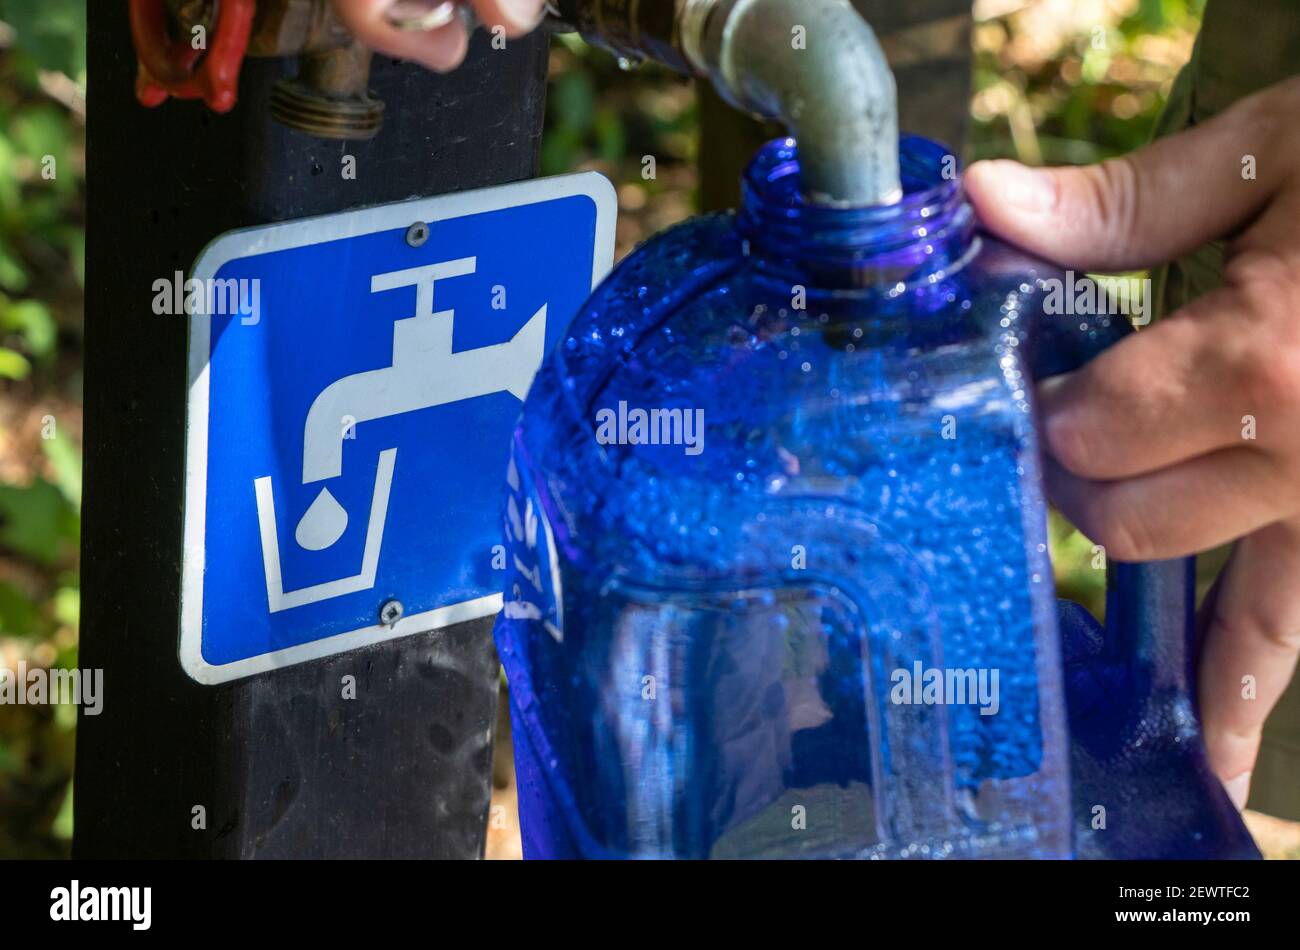 22 de agosto de 2021 - Bolton, QC, Canadá: Llenado de agua potable en botella reutilizable en un punto de agua potable en un campamento, el hombre manos holeando un contenedor Foto de stock